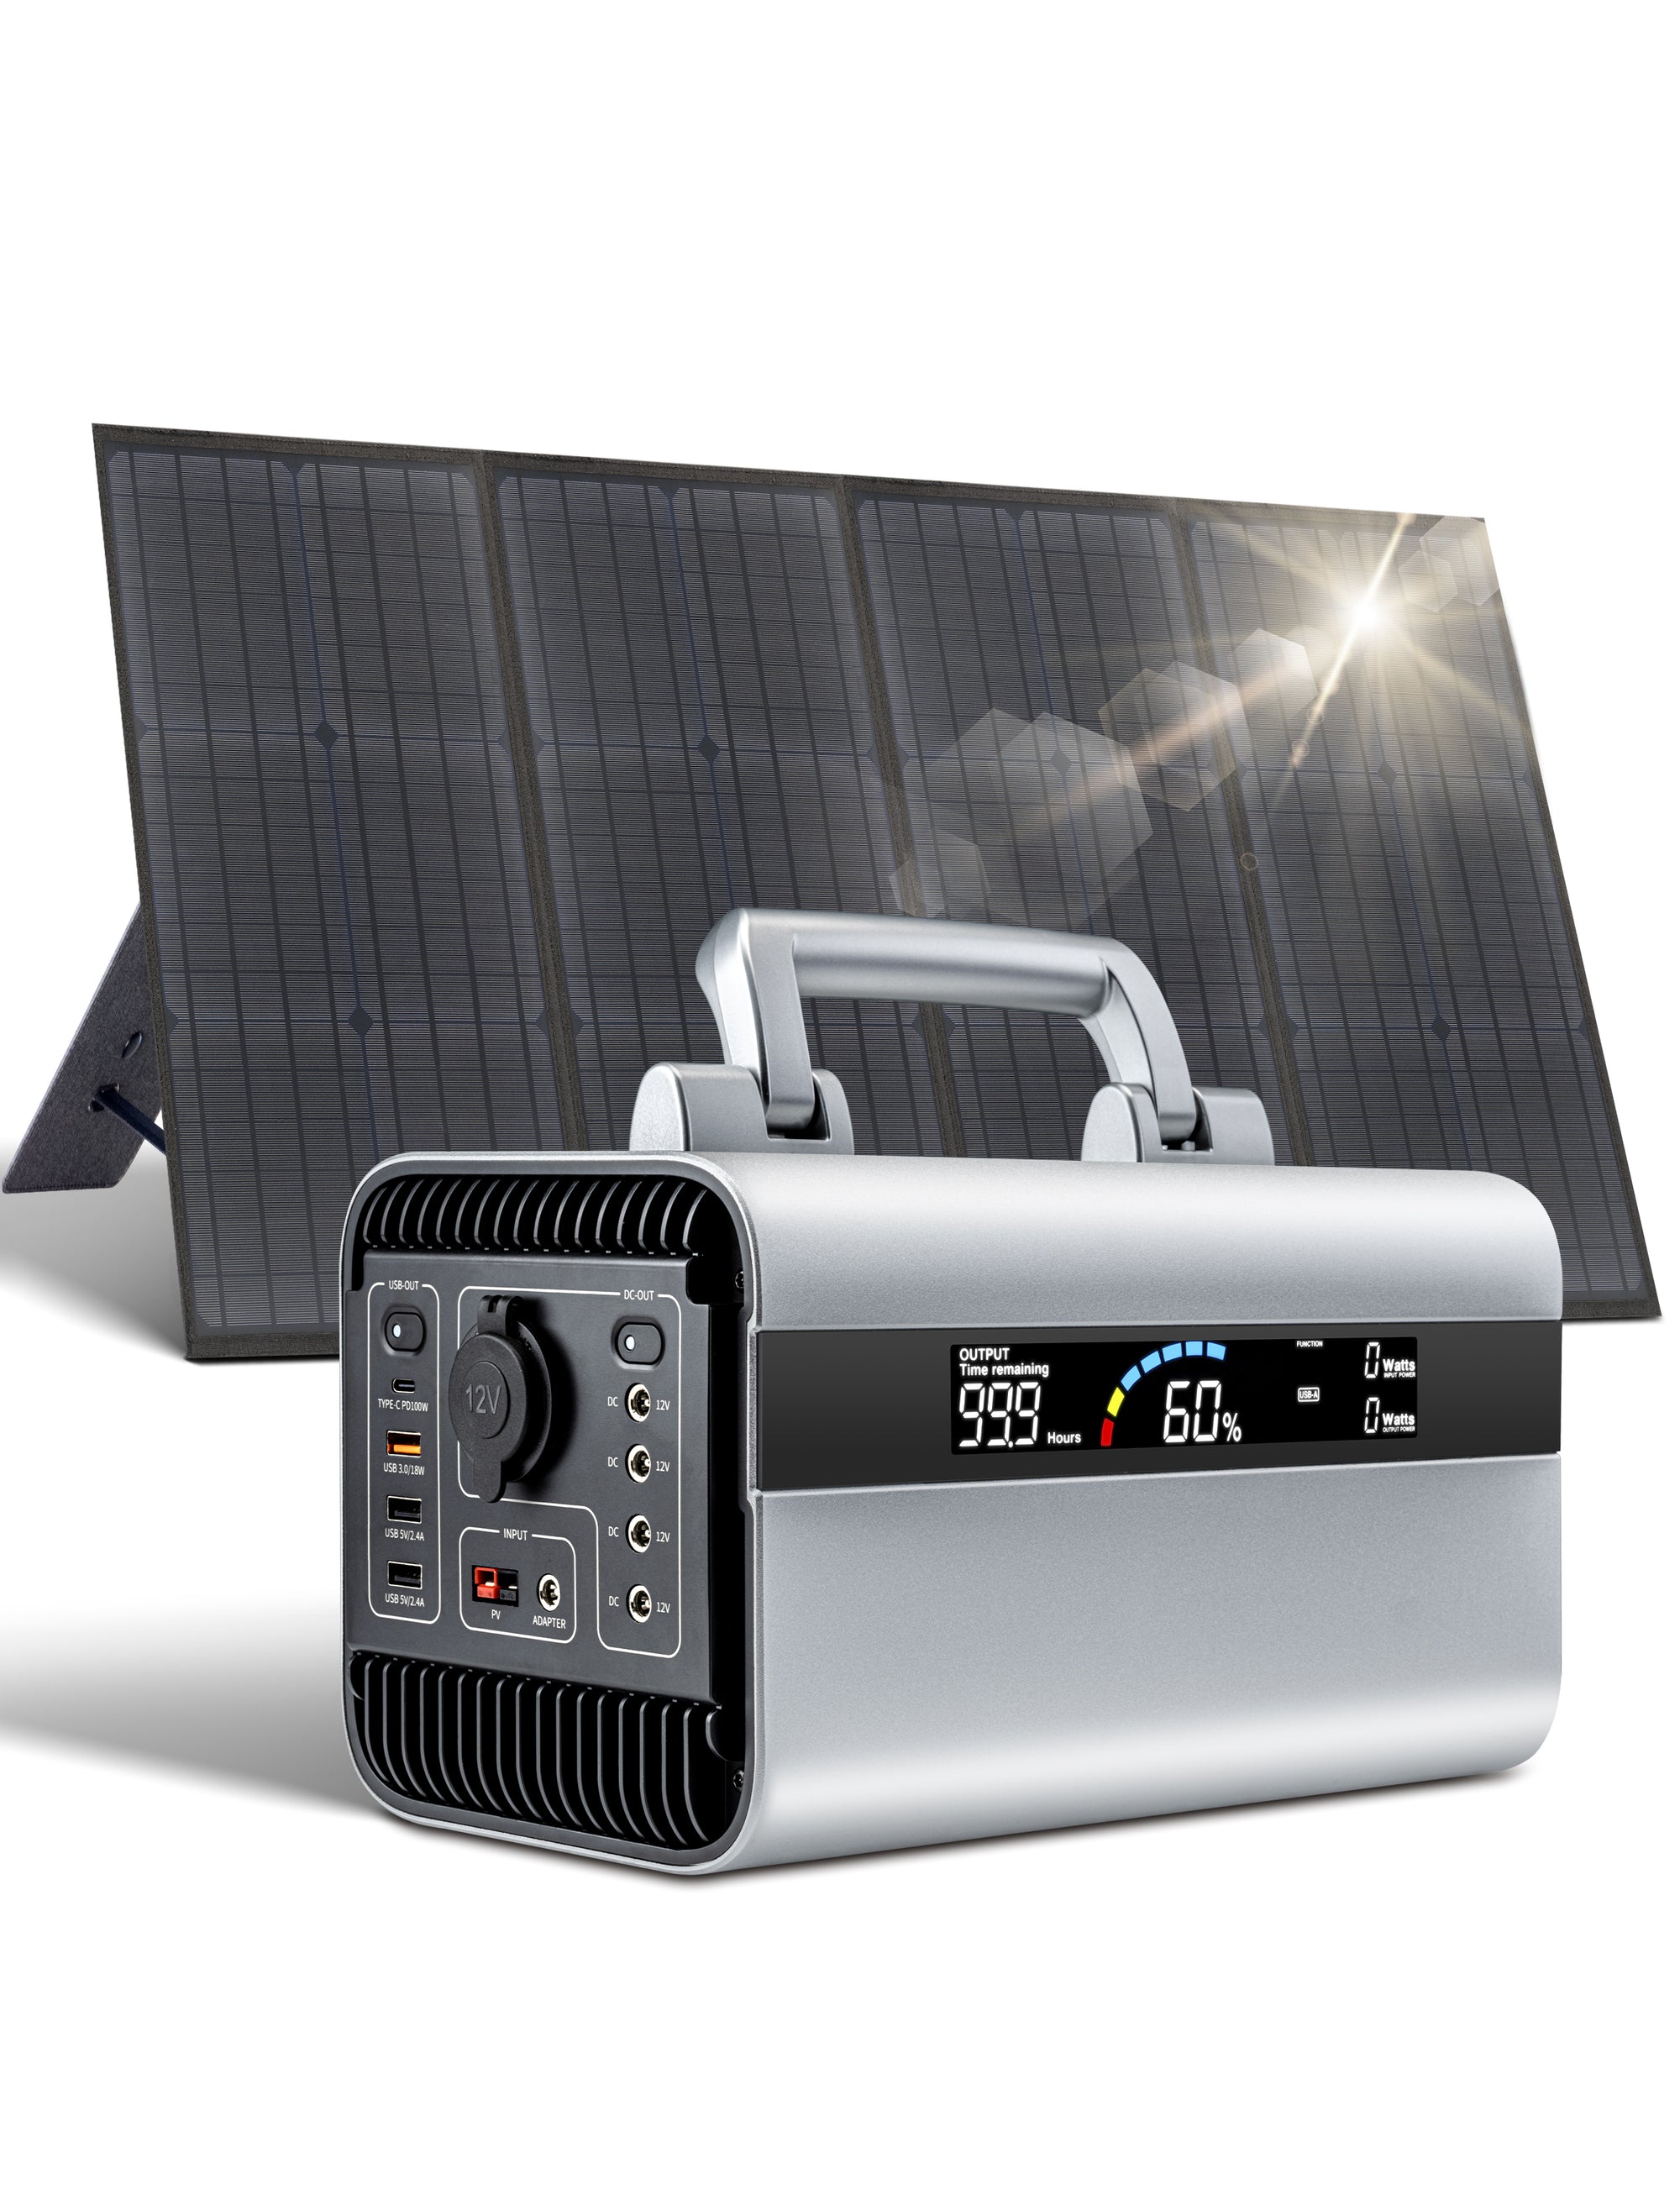 Centrale elettrica portatile da 600 W Generatore solare da 120 W con pannelli solari Centrale elettrica per campeggio all'aperto, viaggi brevi, interruzioni di corrente